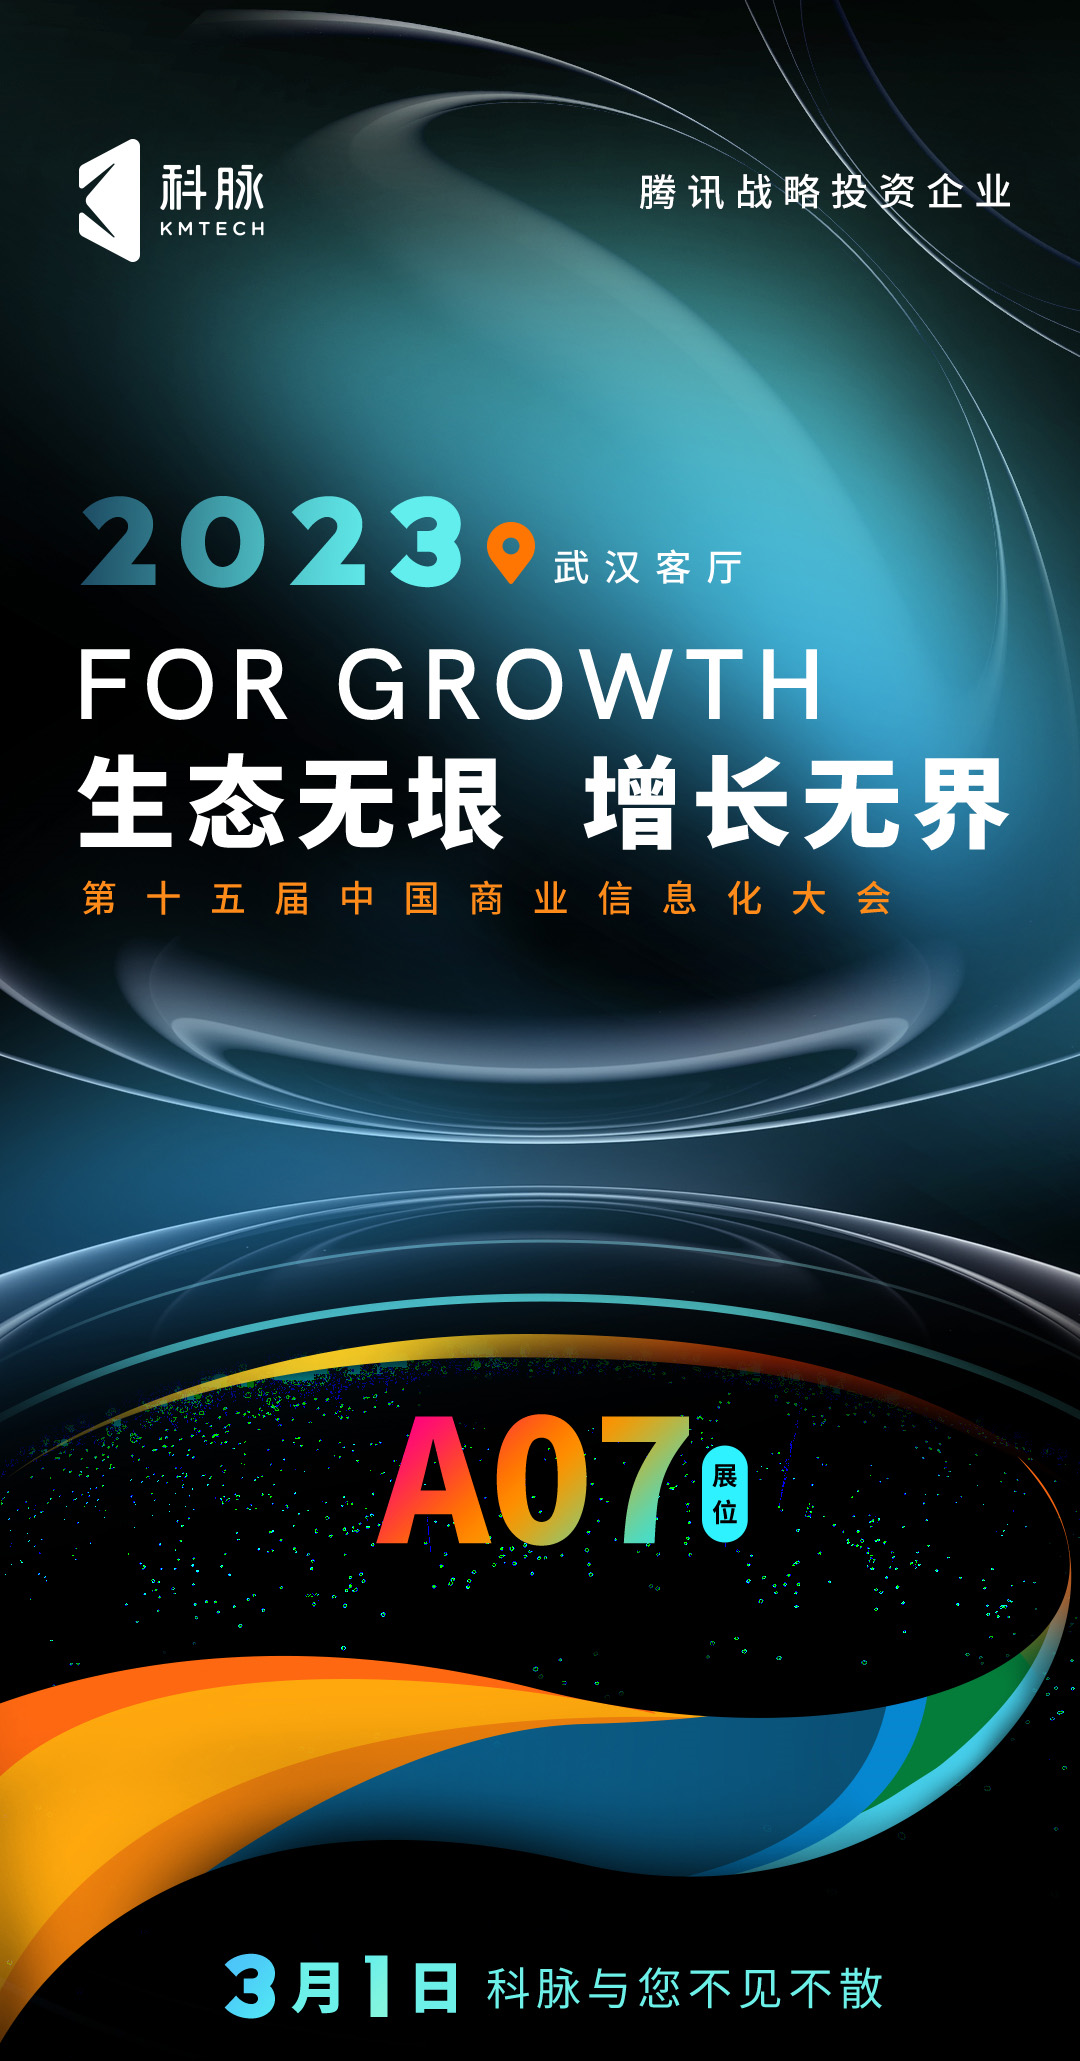 科脉将参加第十五届中国商业信息化行业大会